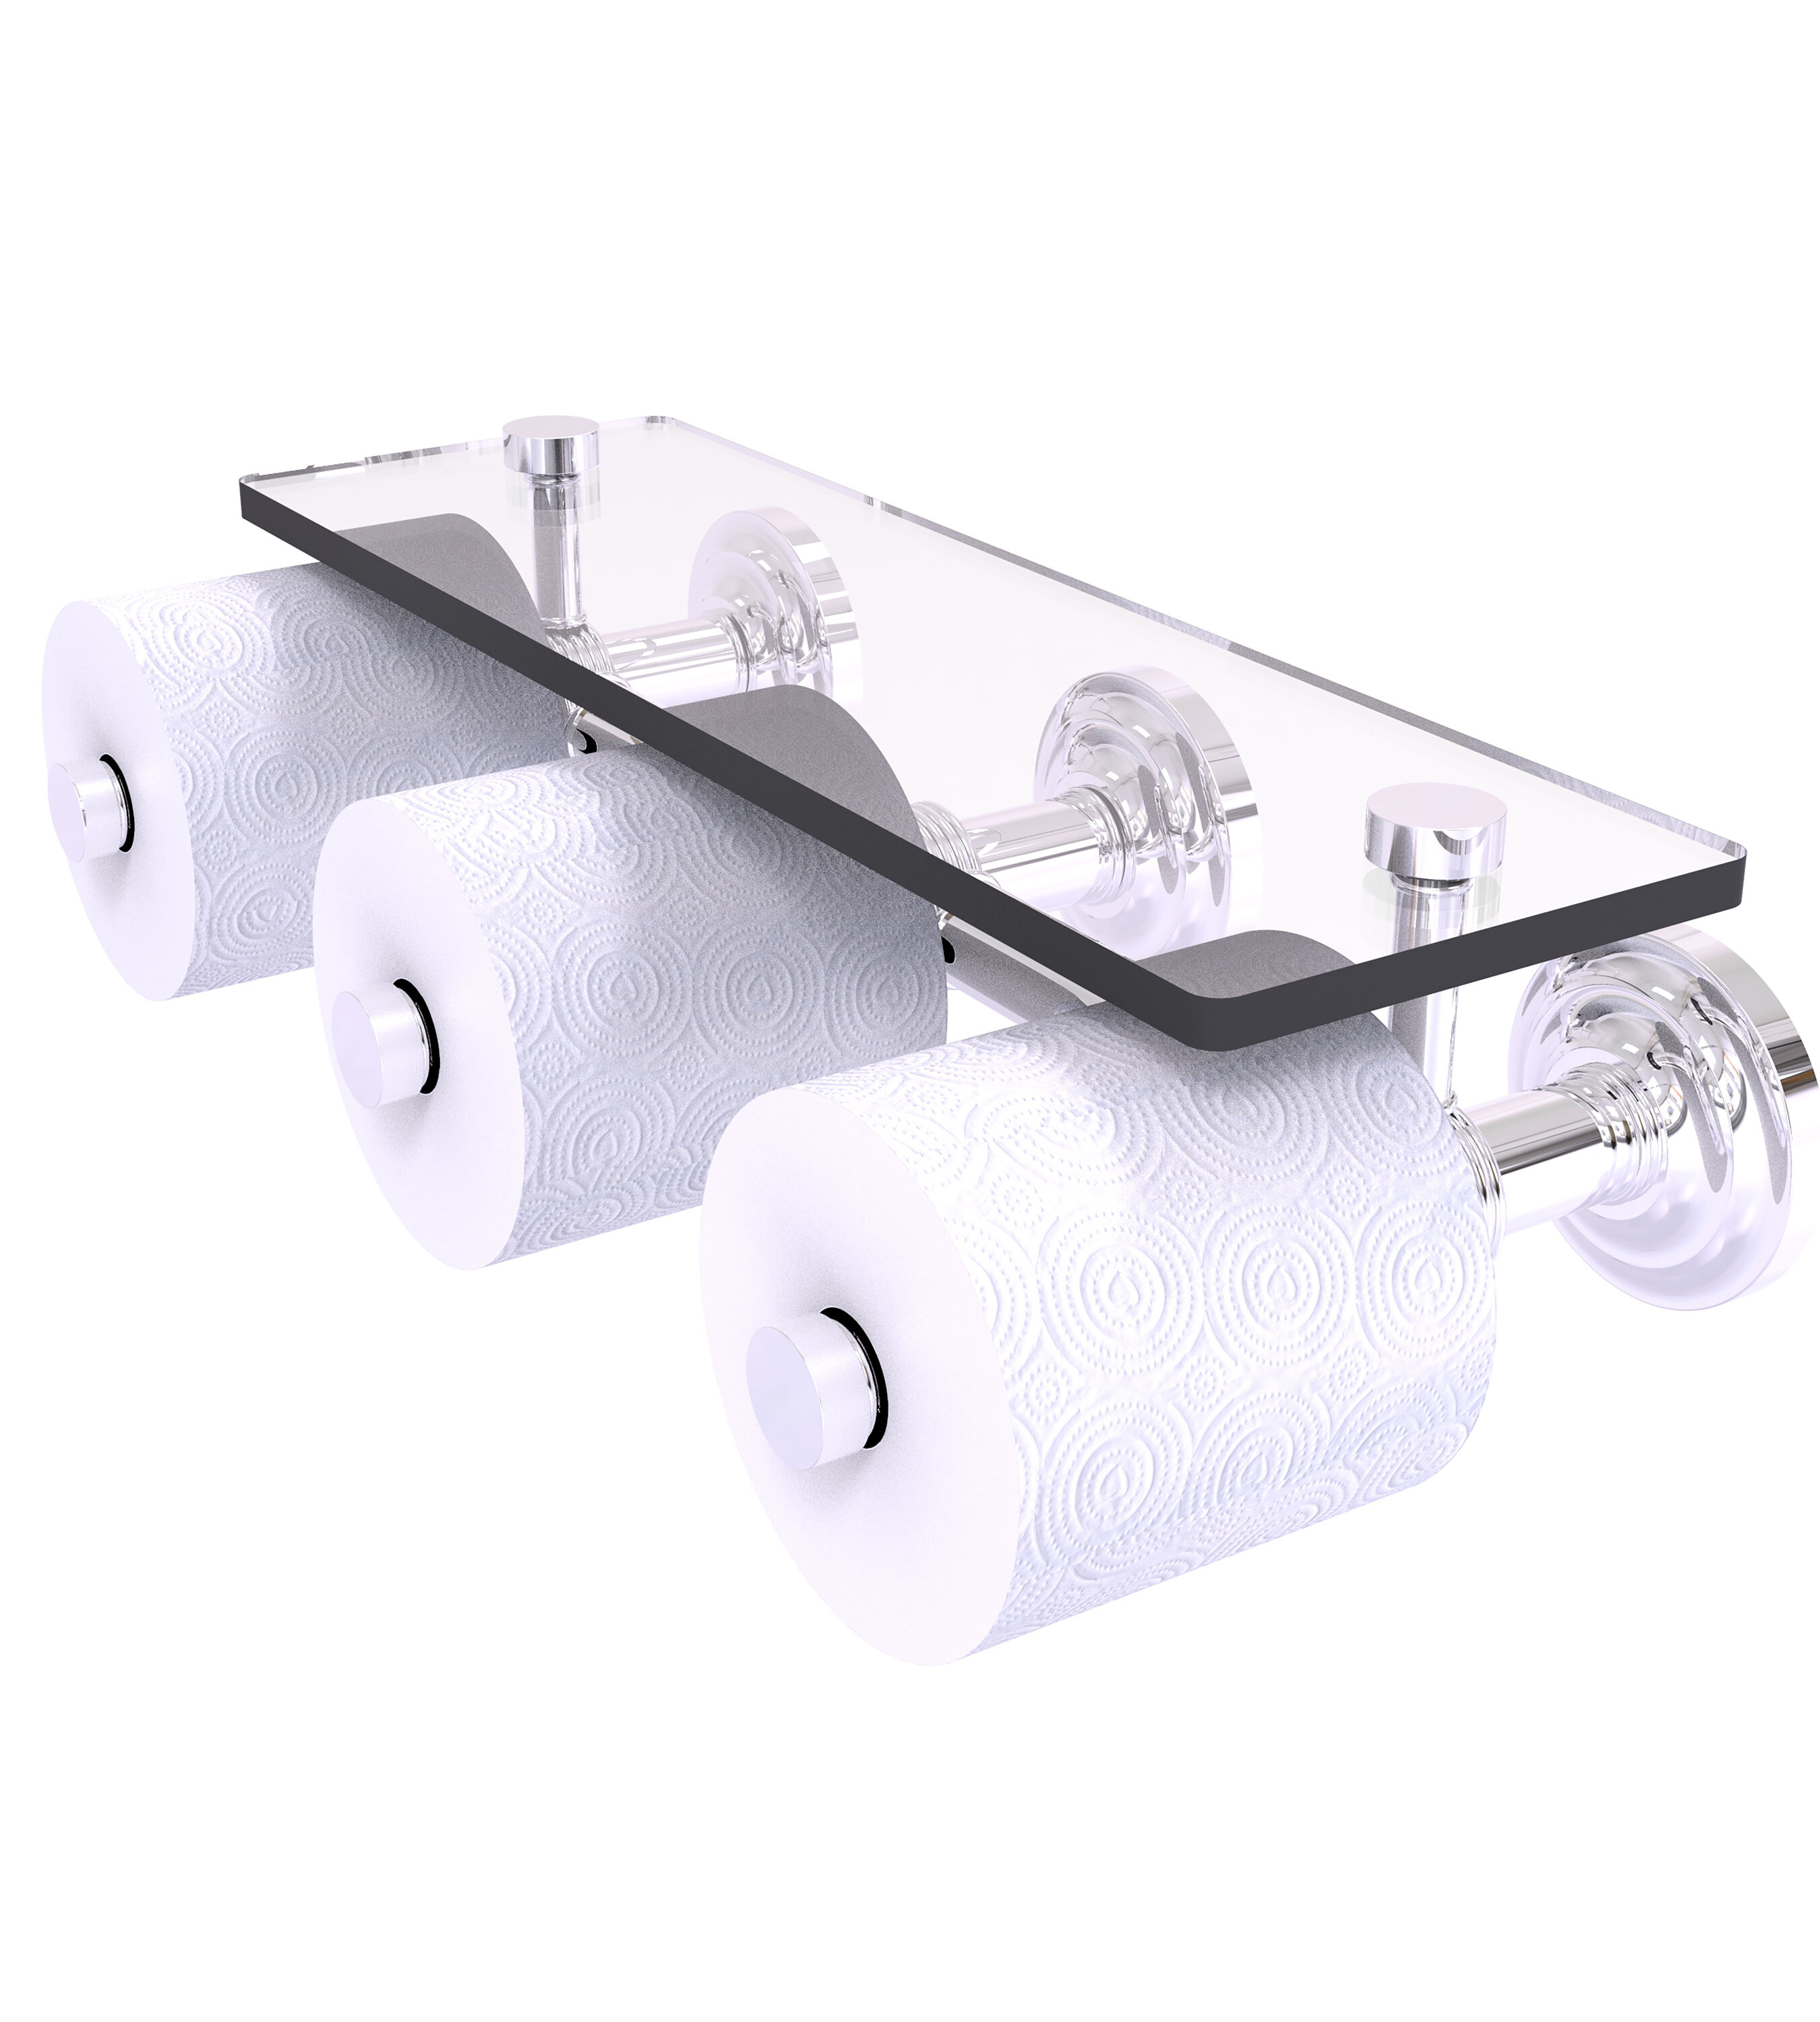 Toilet Roll Holder with Shelf mDesign Toilet Paper Holder with Shelf Chrome Wall Mounted Toilet Paper Holder 